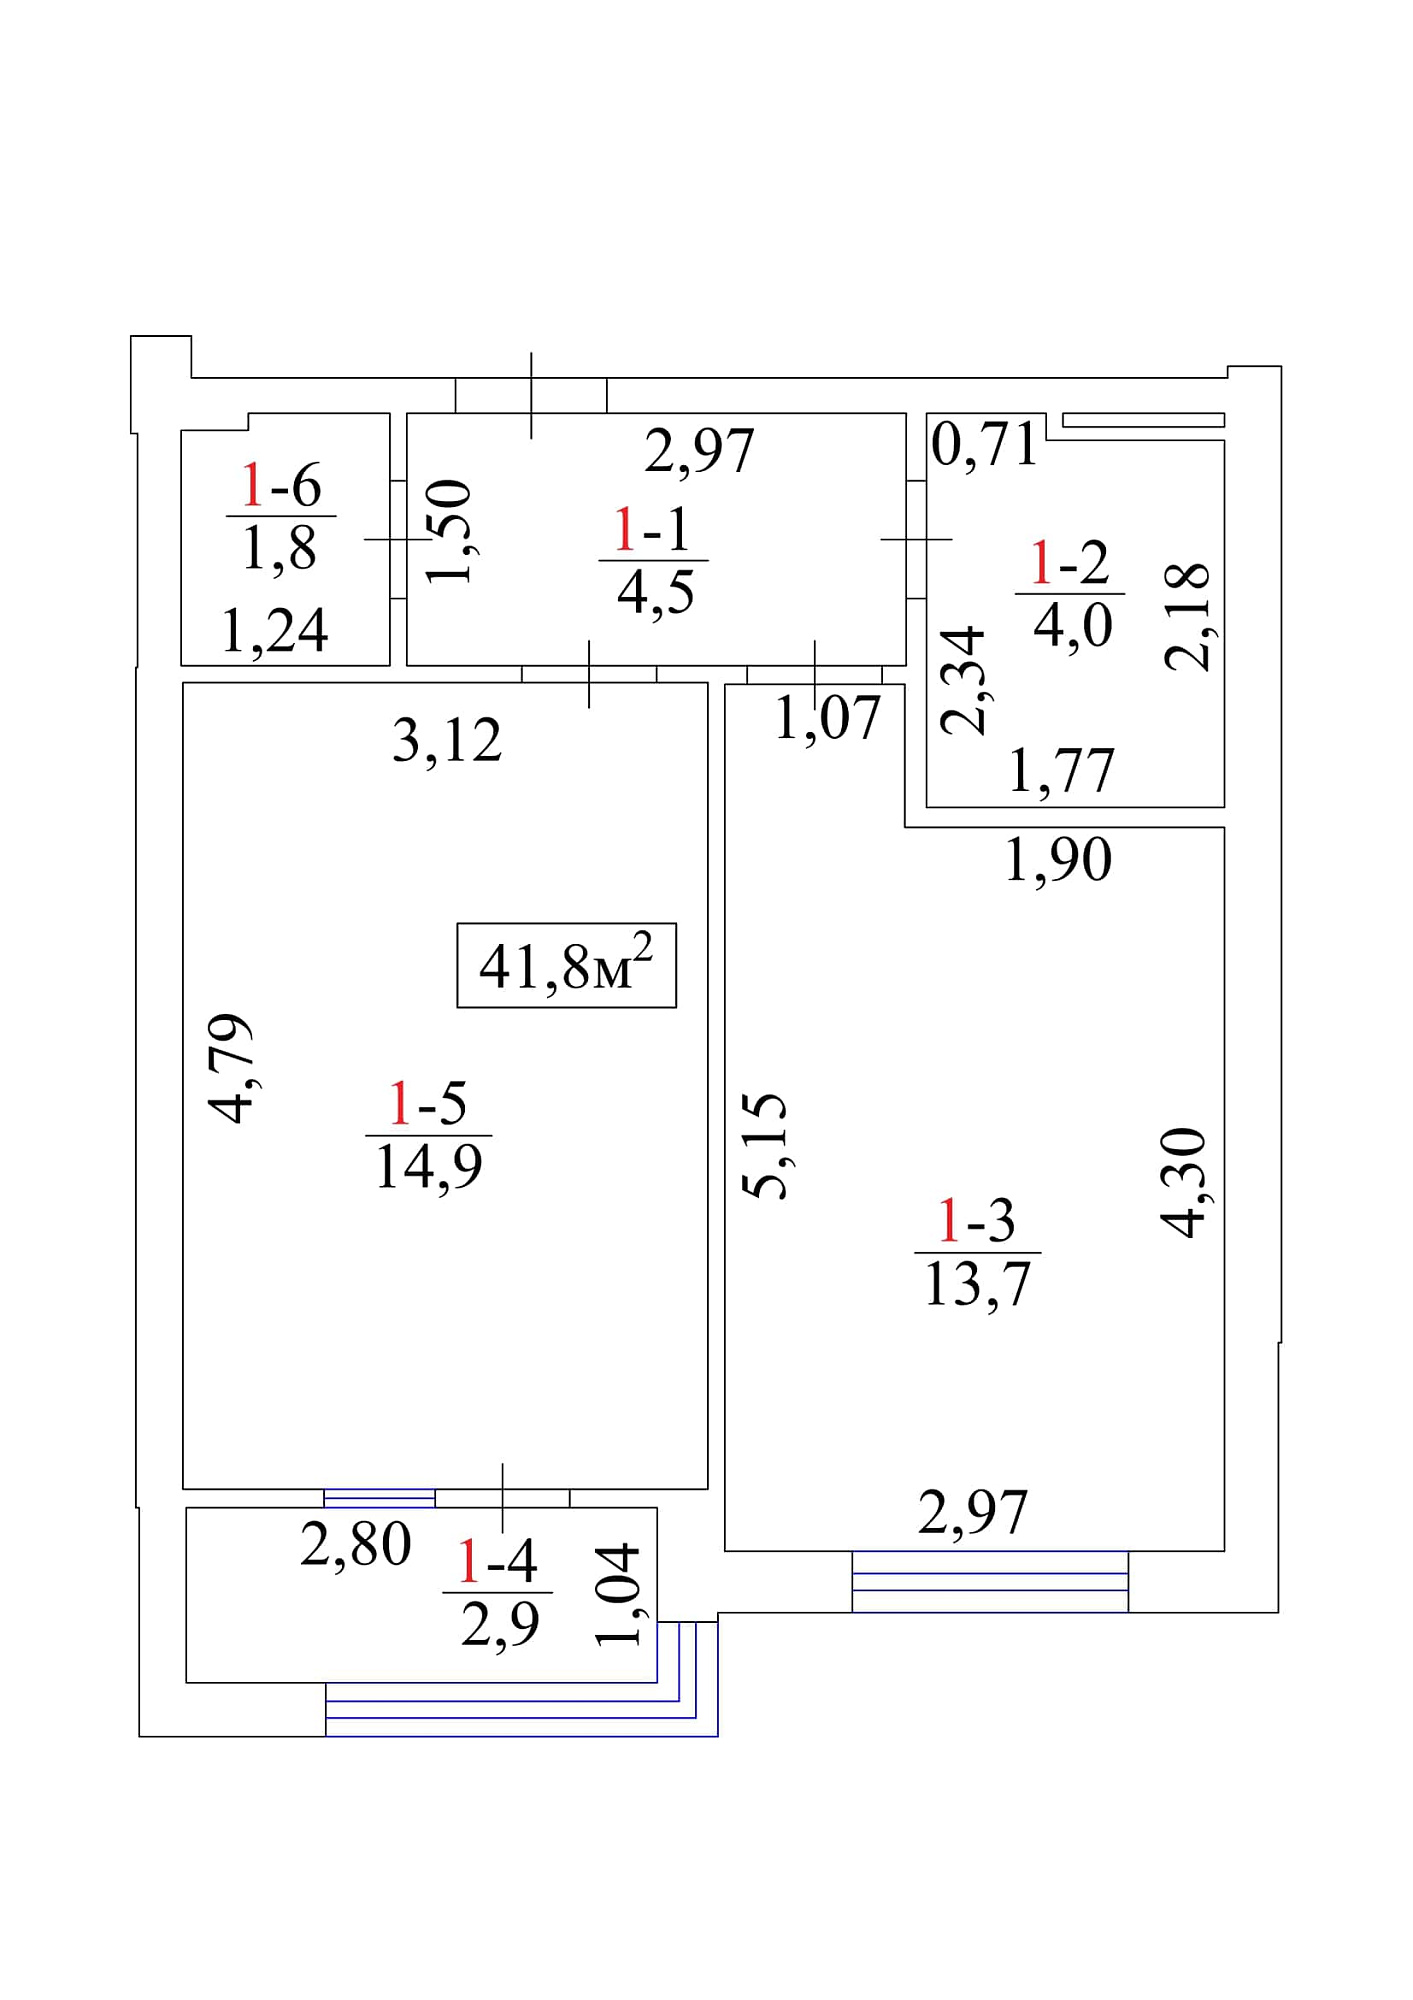 Планировка 1-к квартира площей 41.8м2, AB-01-01/00001.